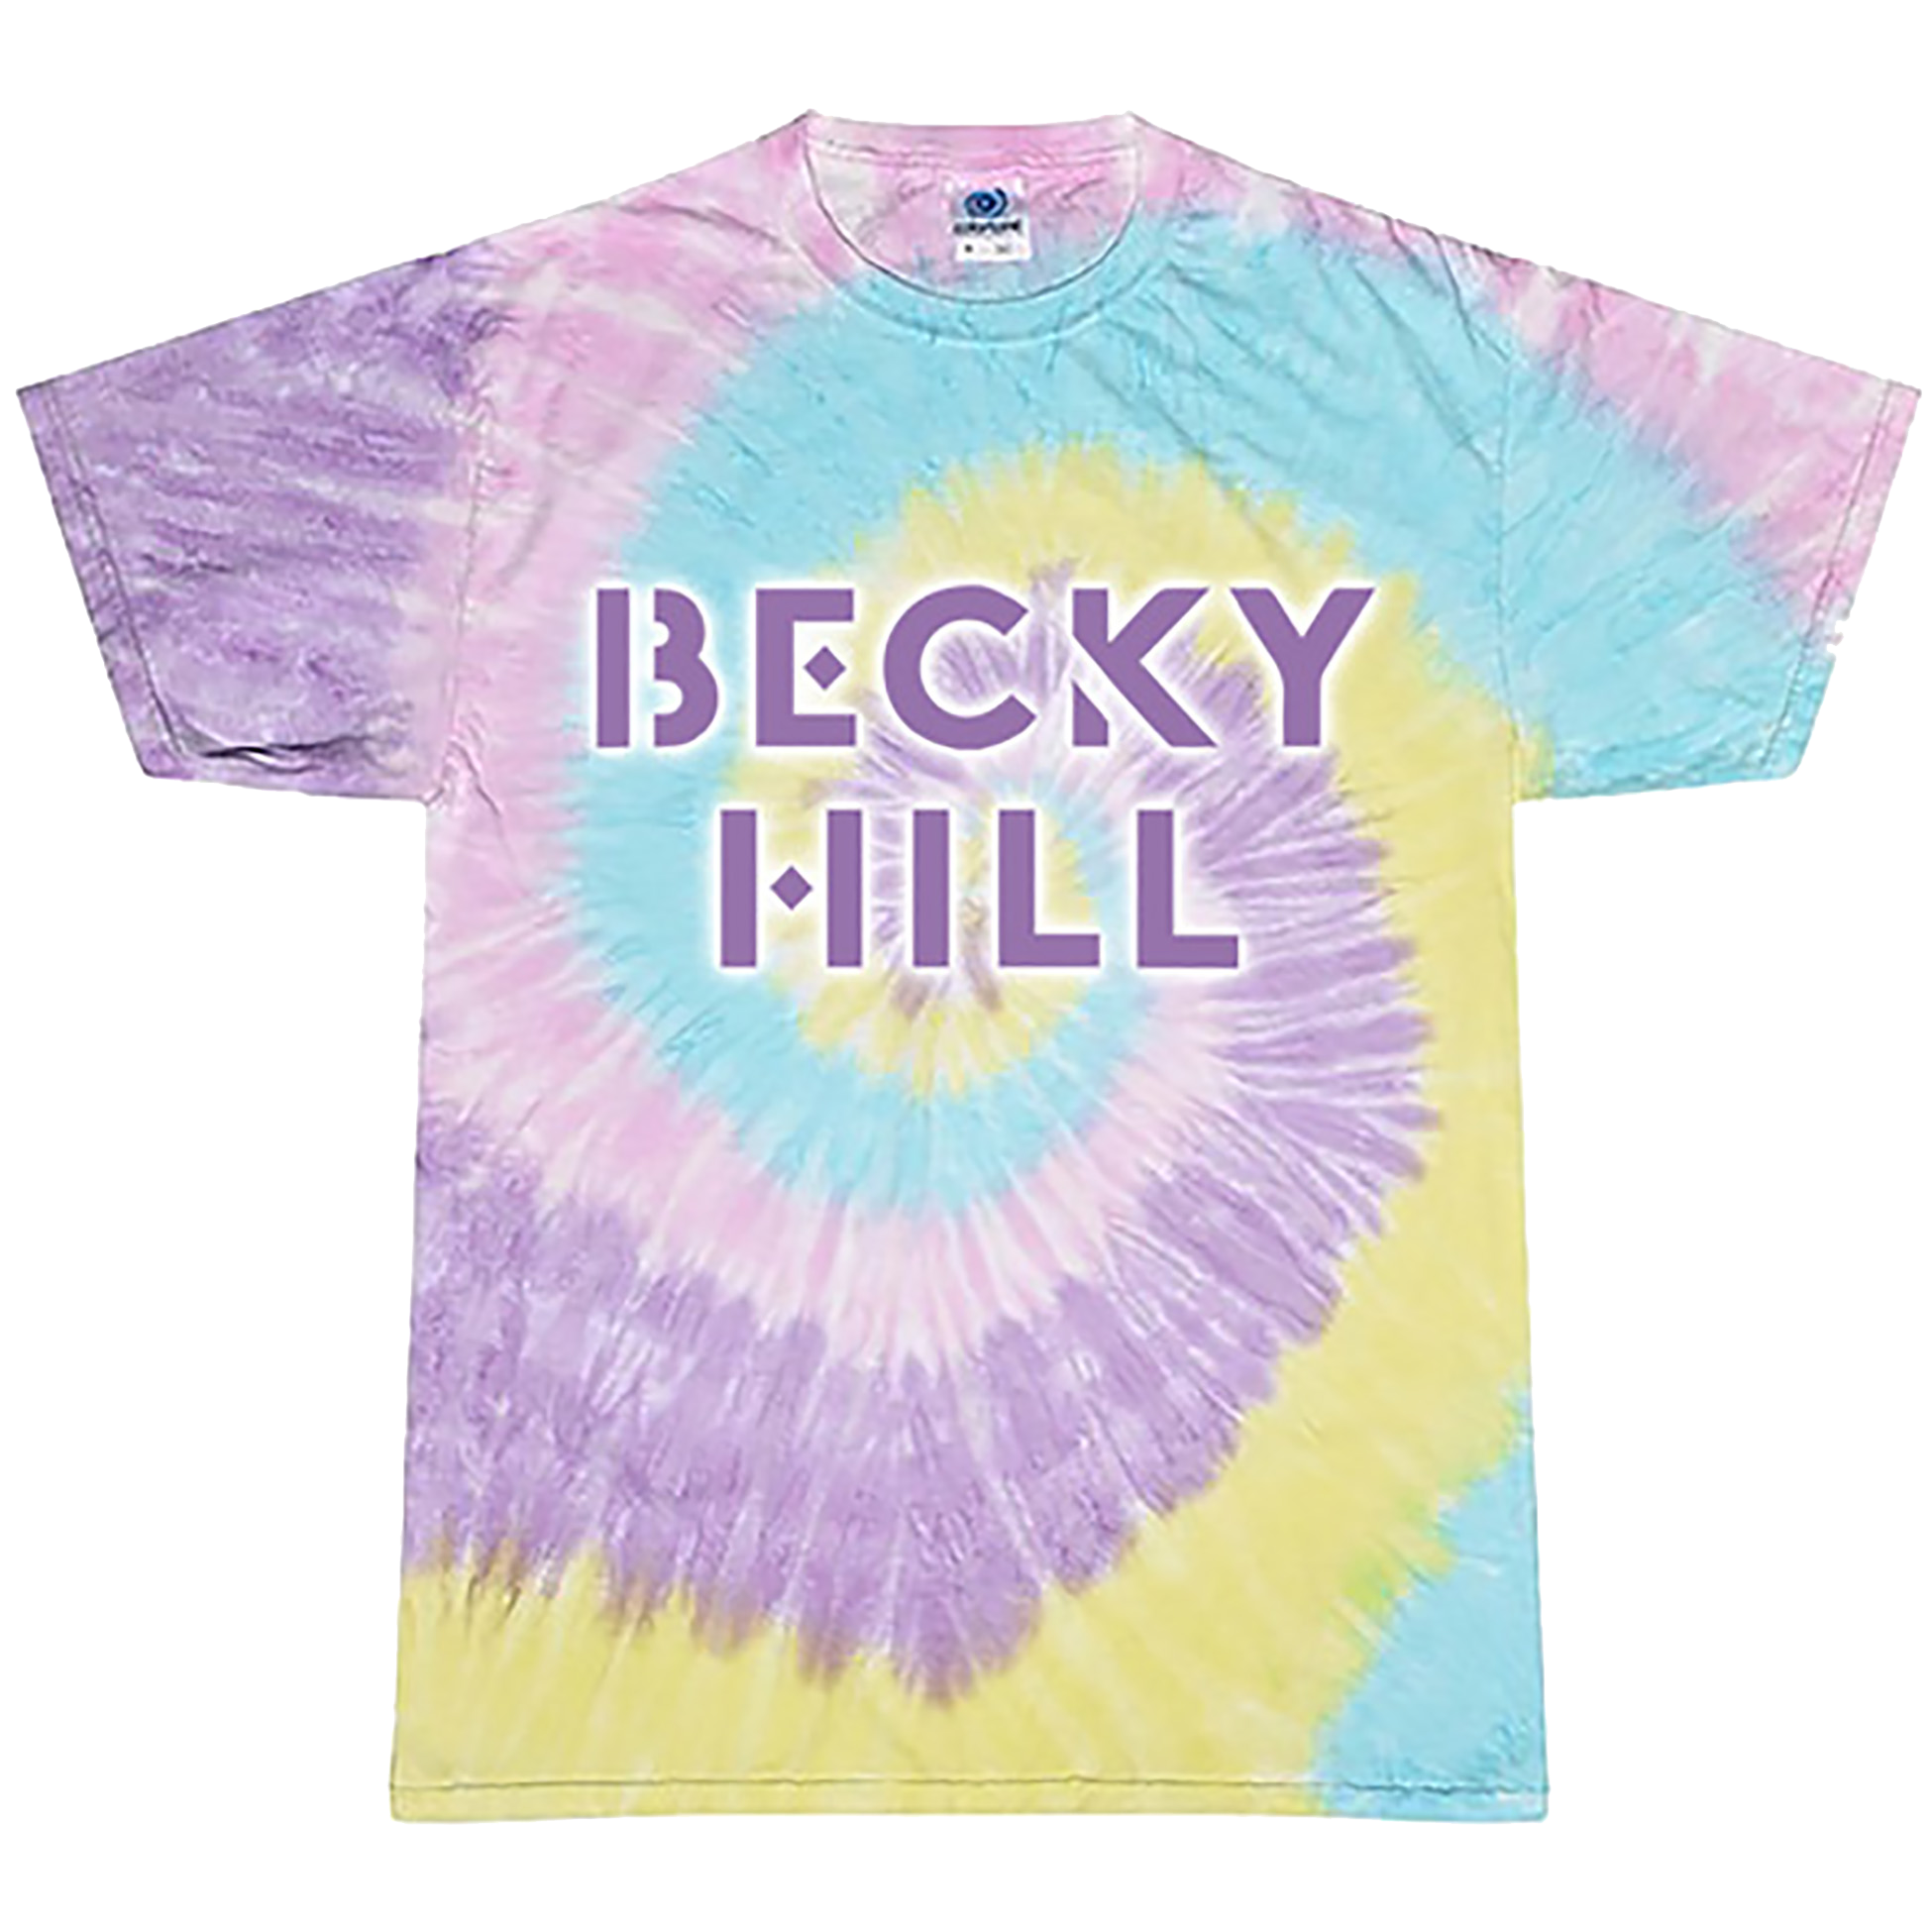 Becky Hill - Tie Dye 'Becky Hill Logo' Design on Jellybean Tie Dye T-shirt